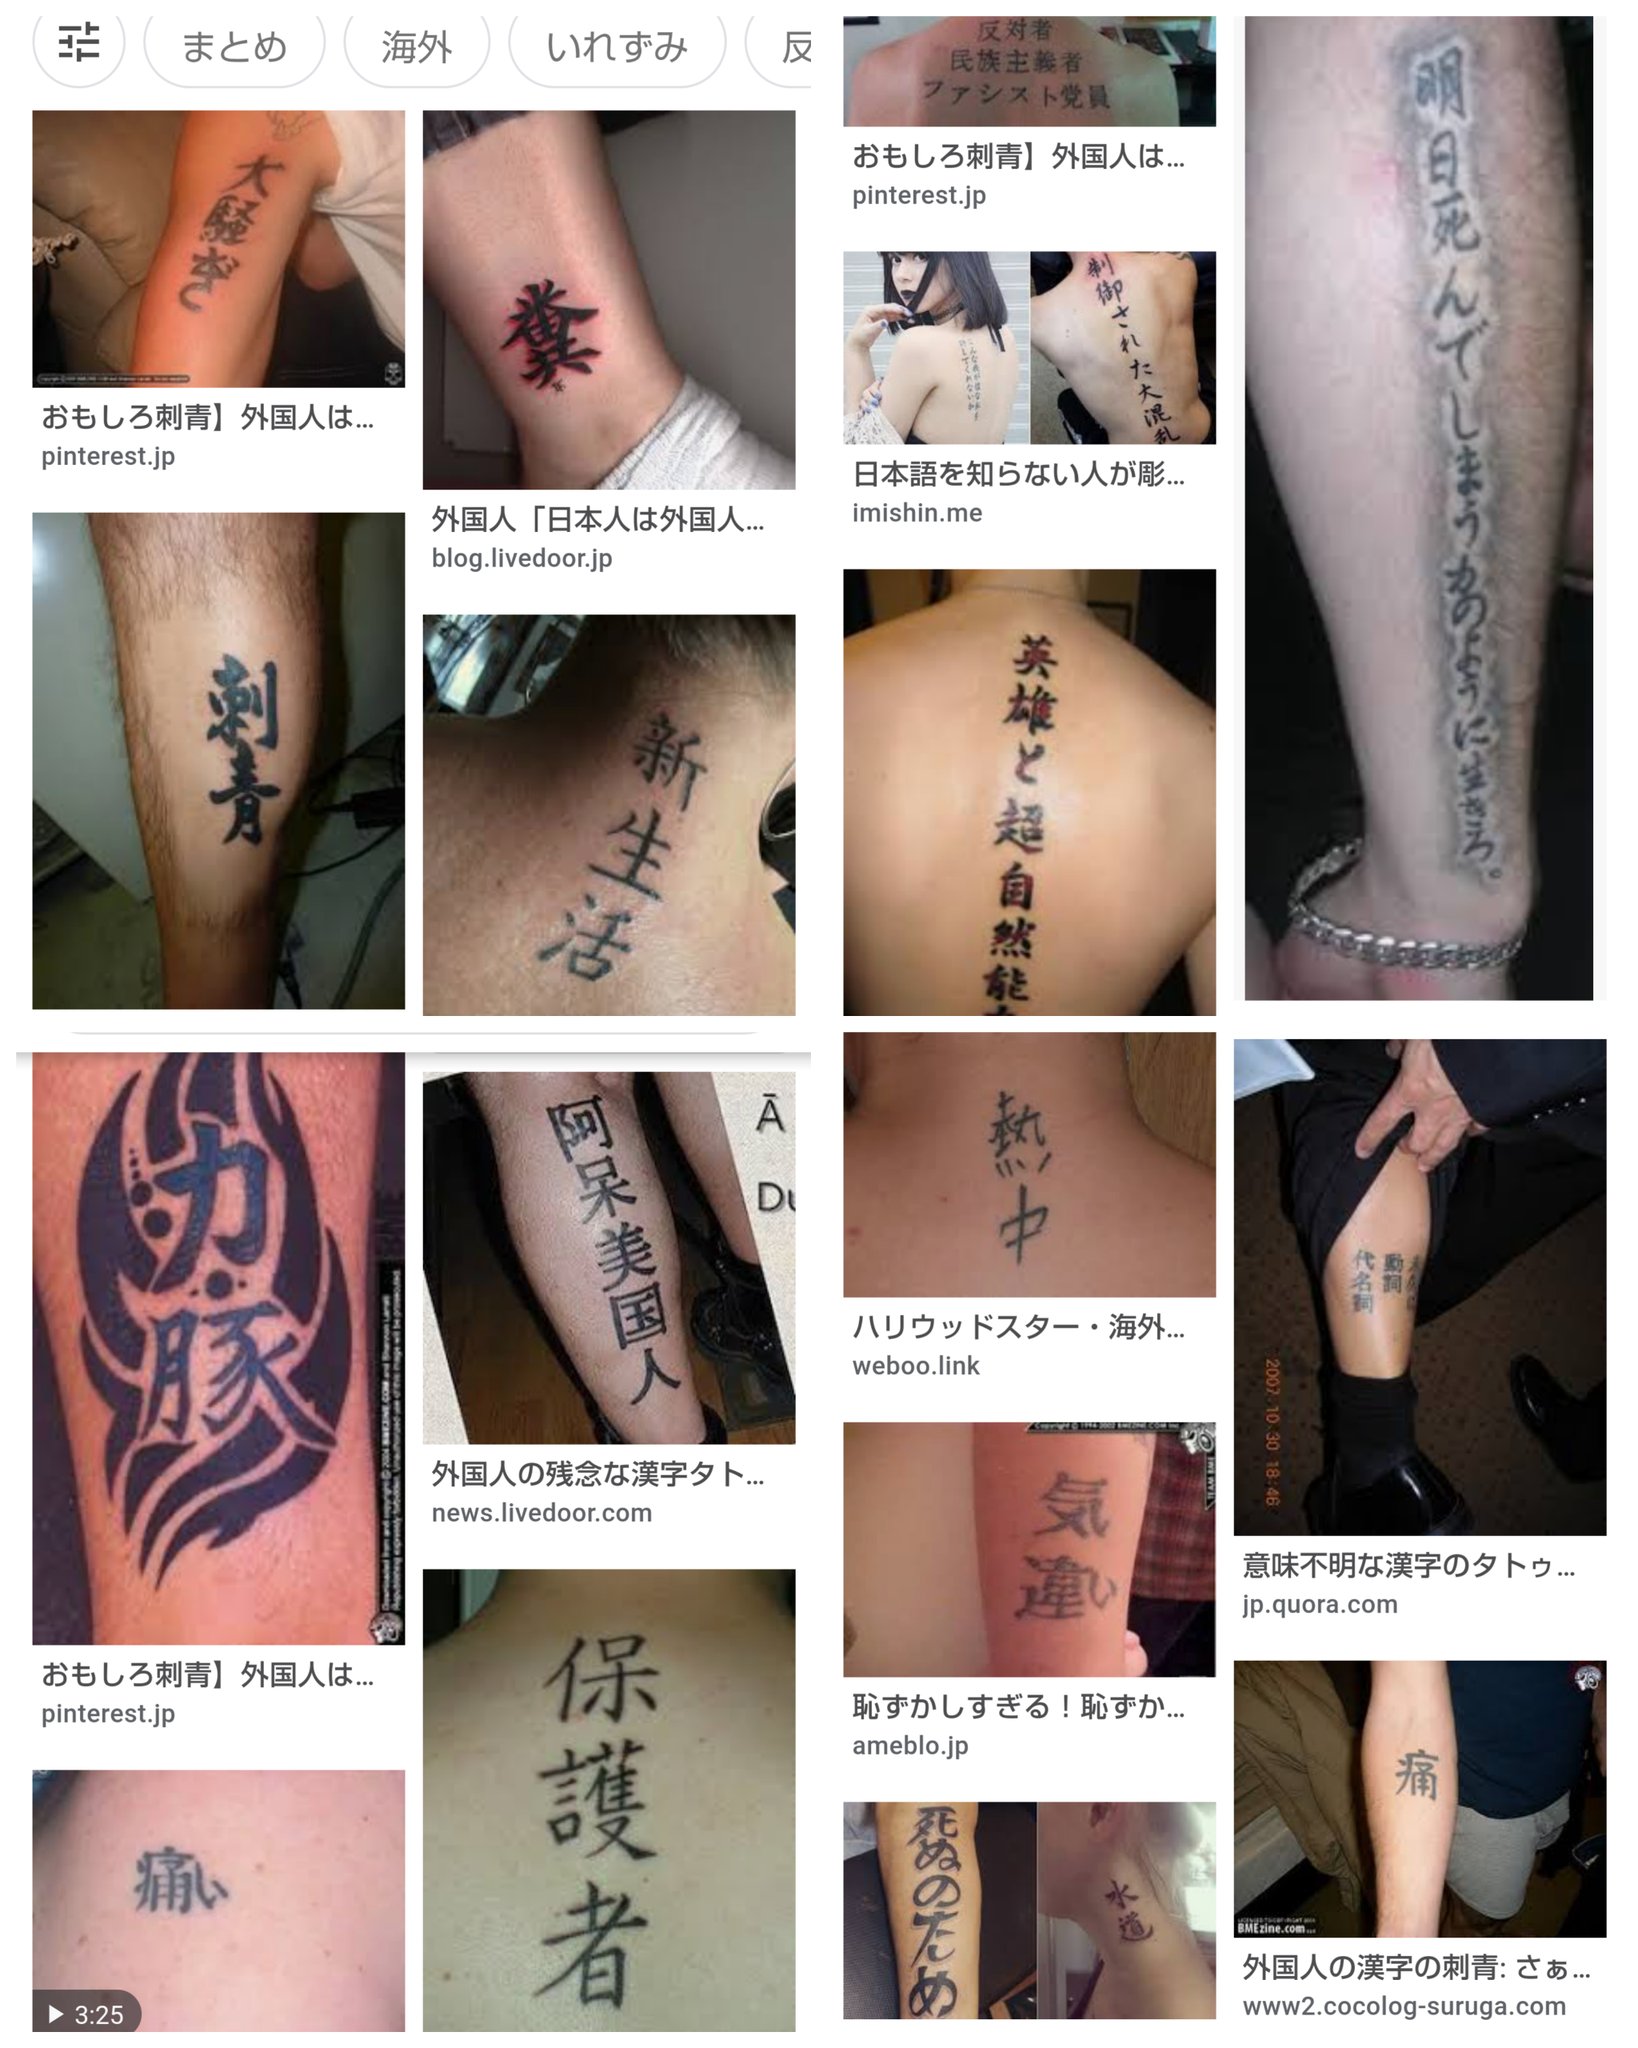 Tattoos By You タトゥー の予約で 英語 の希望がスゴく多いです 間違ってる 英文などを持って来る場合も 私は少しだけ英語出来ますので指摘すると 検索 したんで 留学 してた人に聞いてなど 外人 から見たら 外人が入れてる 残念 に日本語と変わら